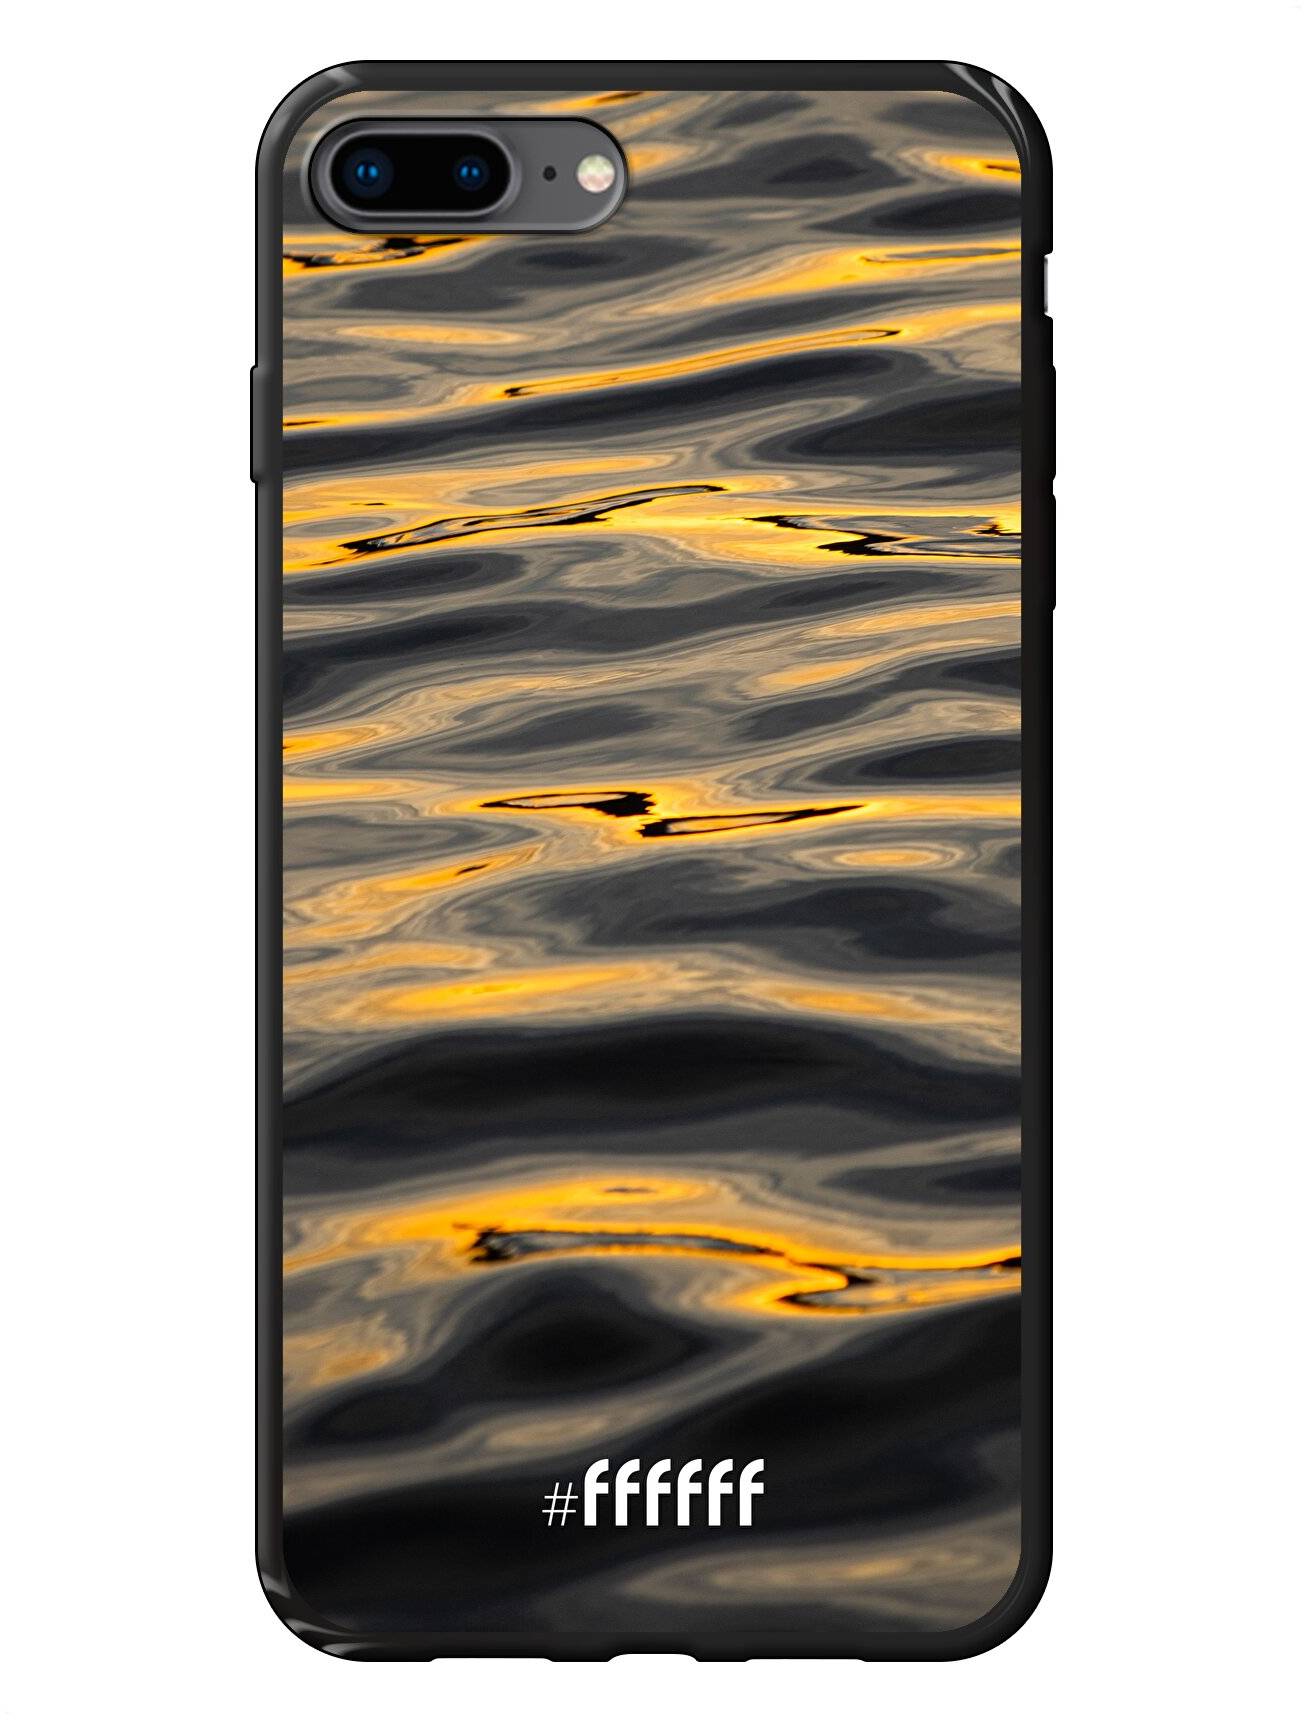 Water Waves iPhone 7 Plus